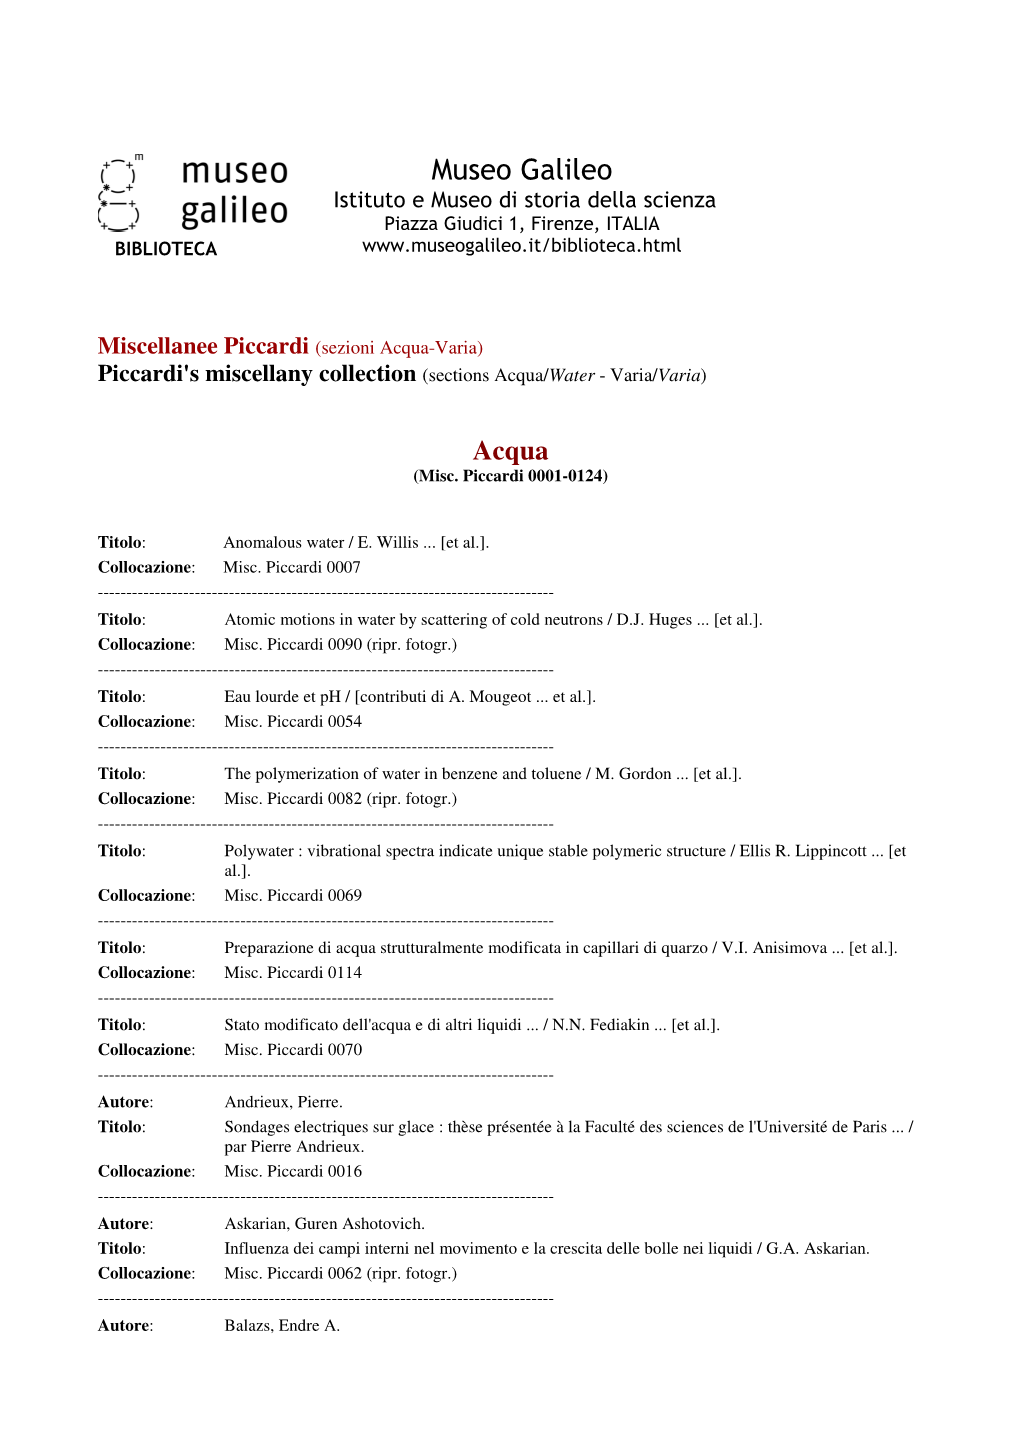 Miscellanee Piccardi (Sezioni Acqua-Varia) Piccardi's Miscellany Collection (Sections Acqua/ Water - Varia/Varia )